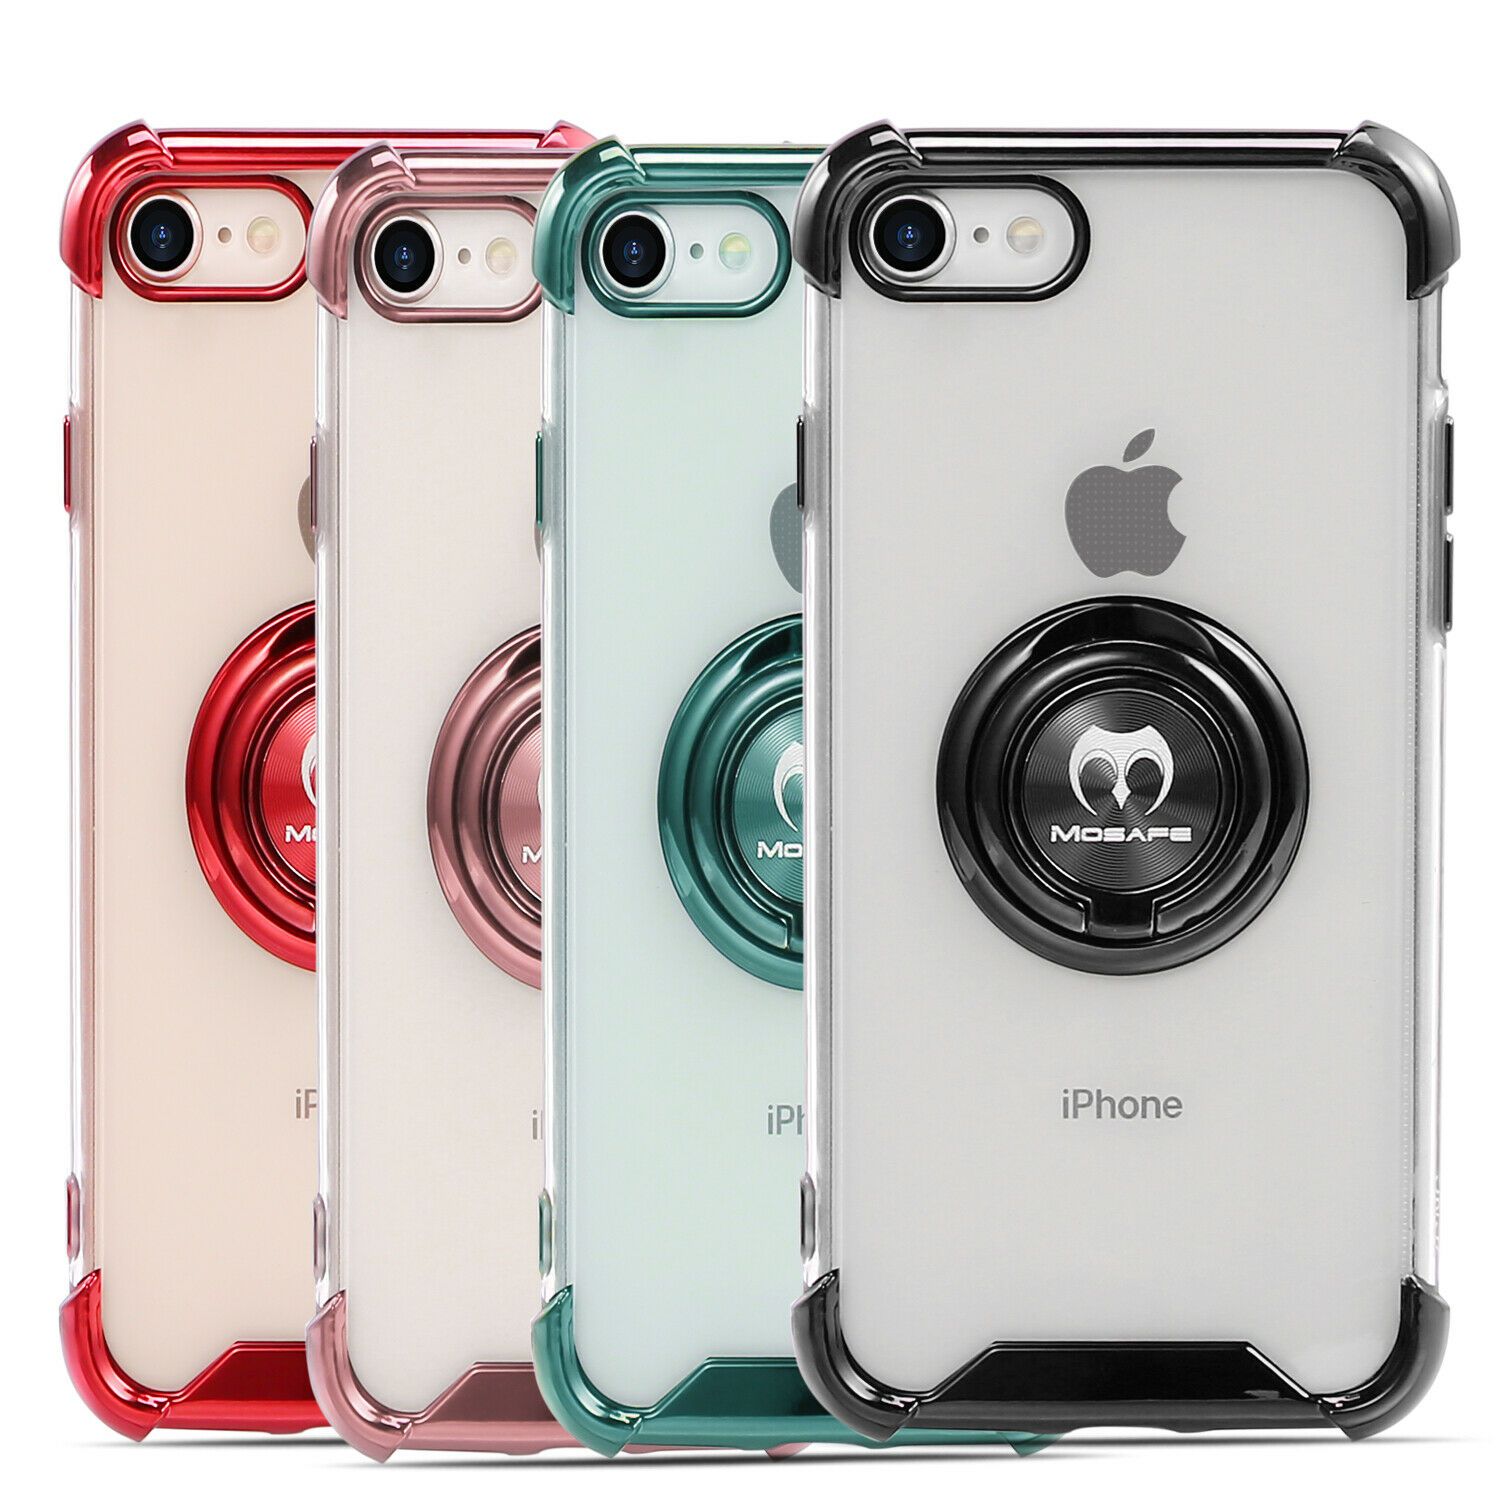 For Apple iPhone 7 8 SE 2020 Ultra Slim Hybrid Shockproof Protective Case Cover bgssupplierbgssupplier 